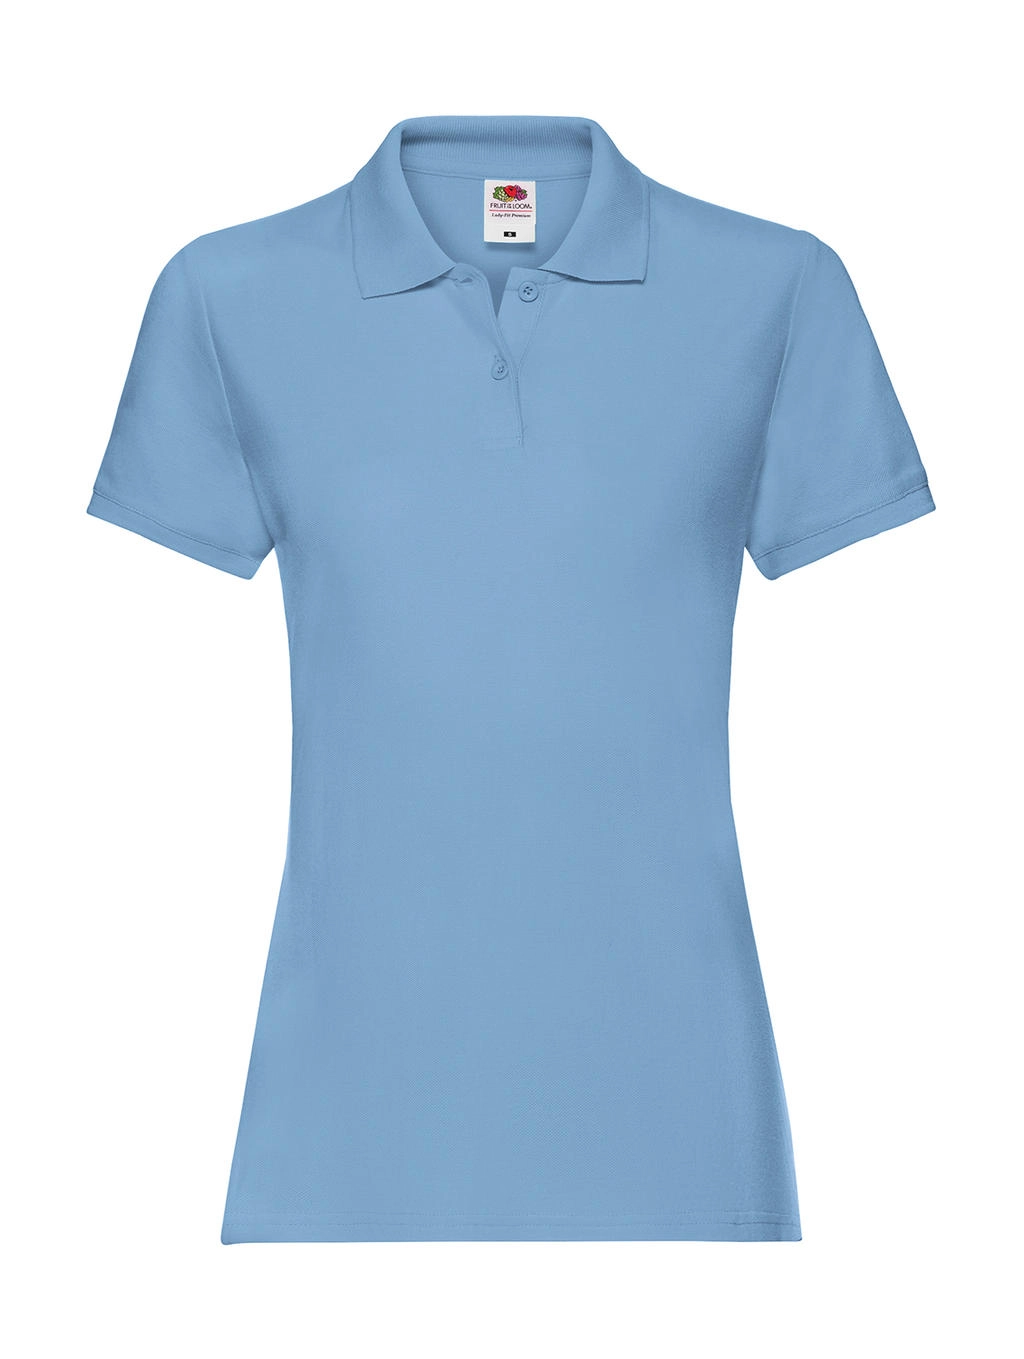 Ladies` Premium Polo zum Besticken und Bedrucken in der Farbe Sky Blue mit Ihren Logo, Schriftzug oder Motiv.